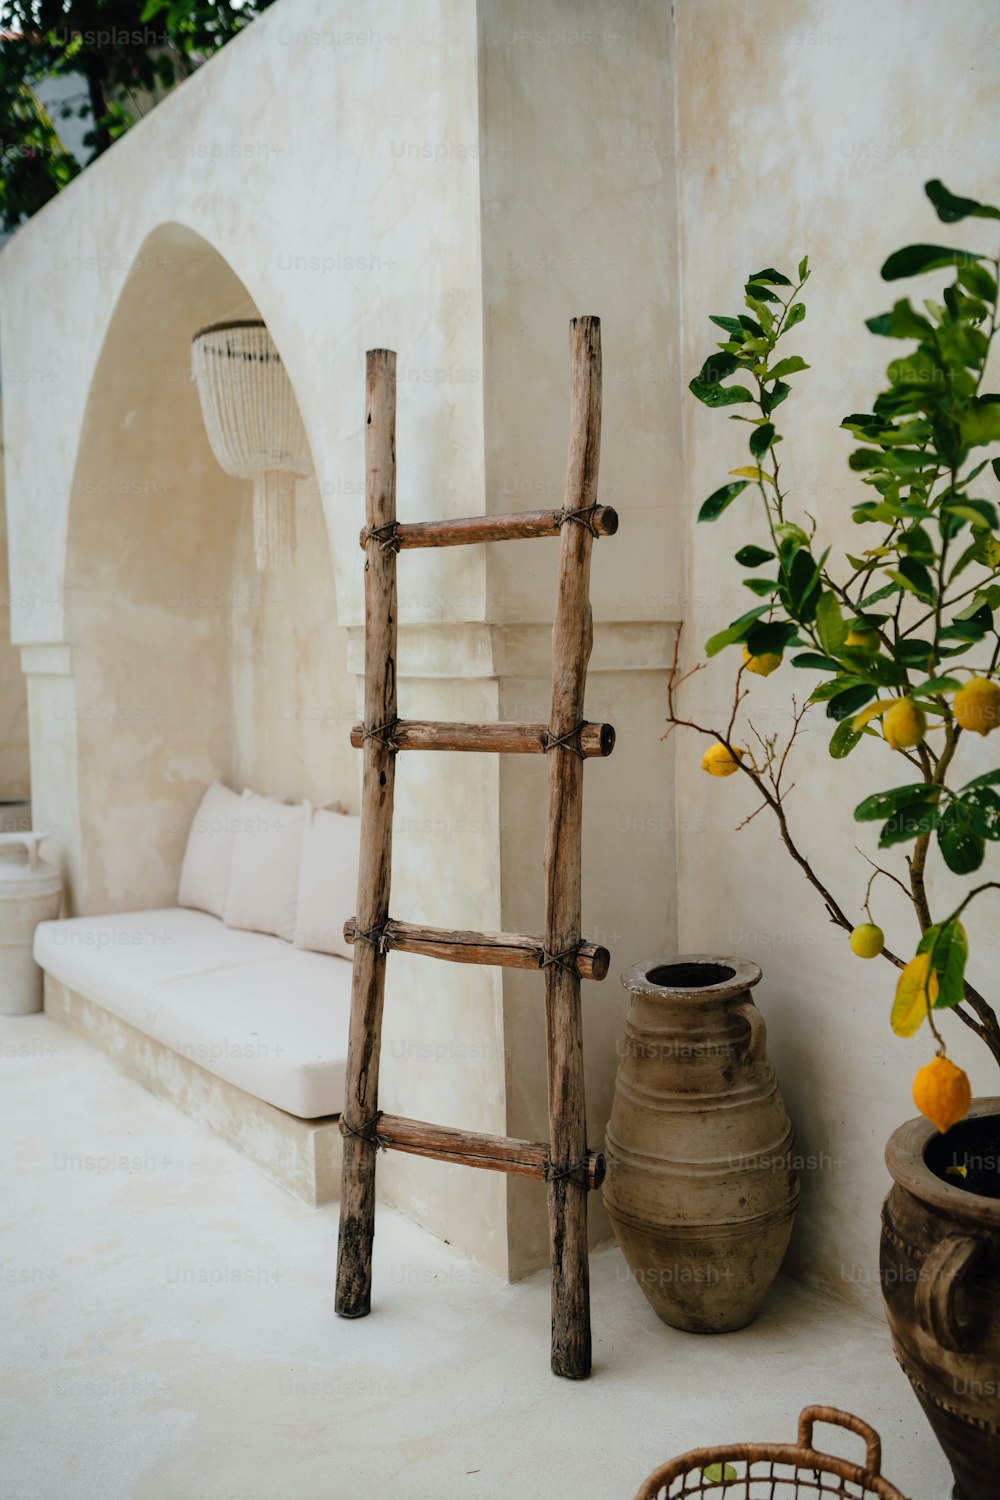 una scala appoggiata a un muro accanto a una pianta in vaso